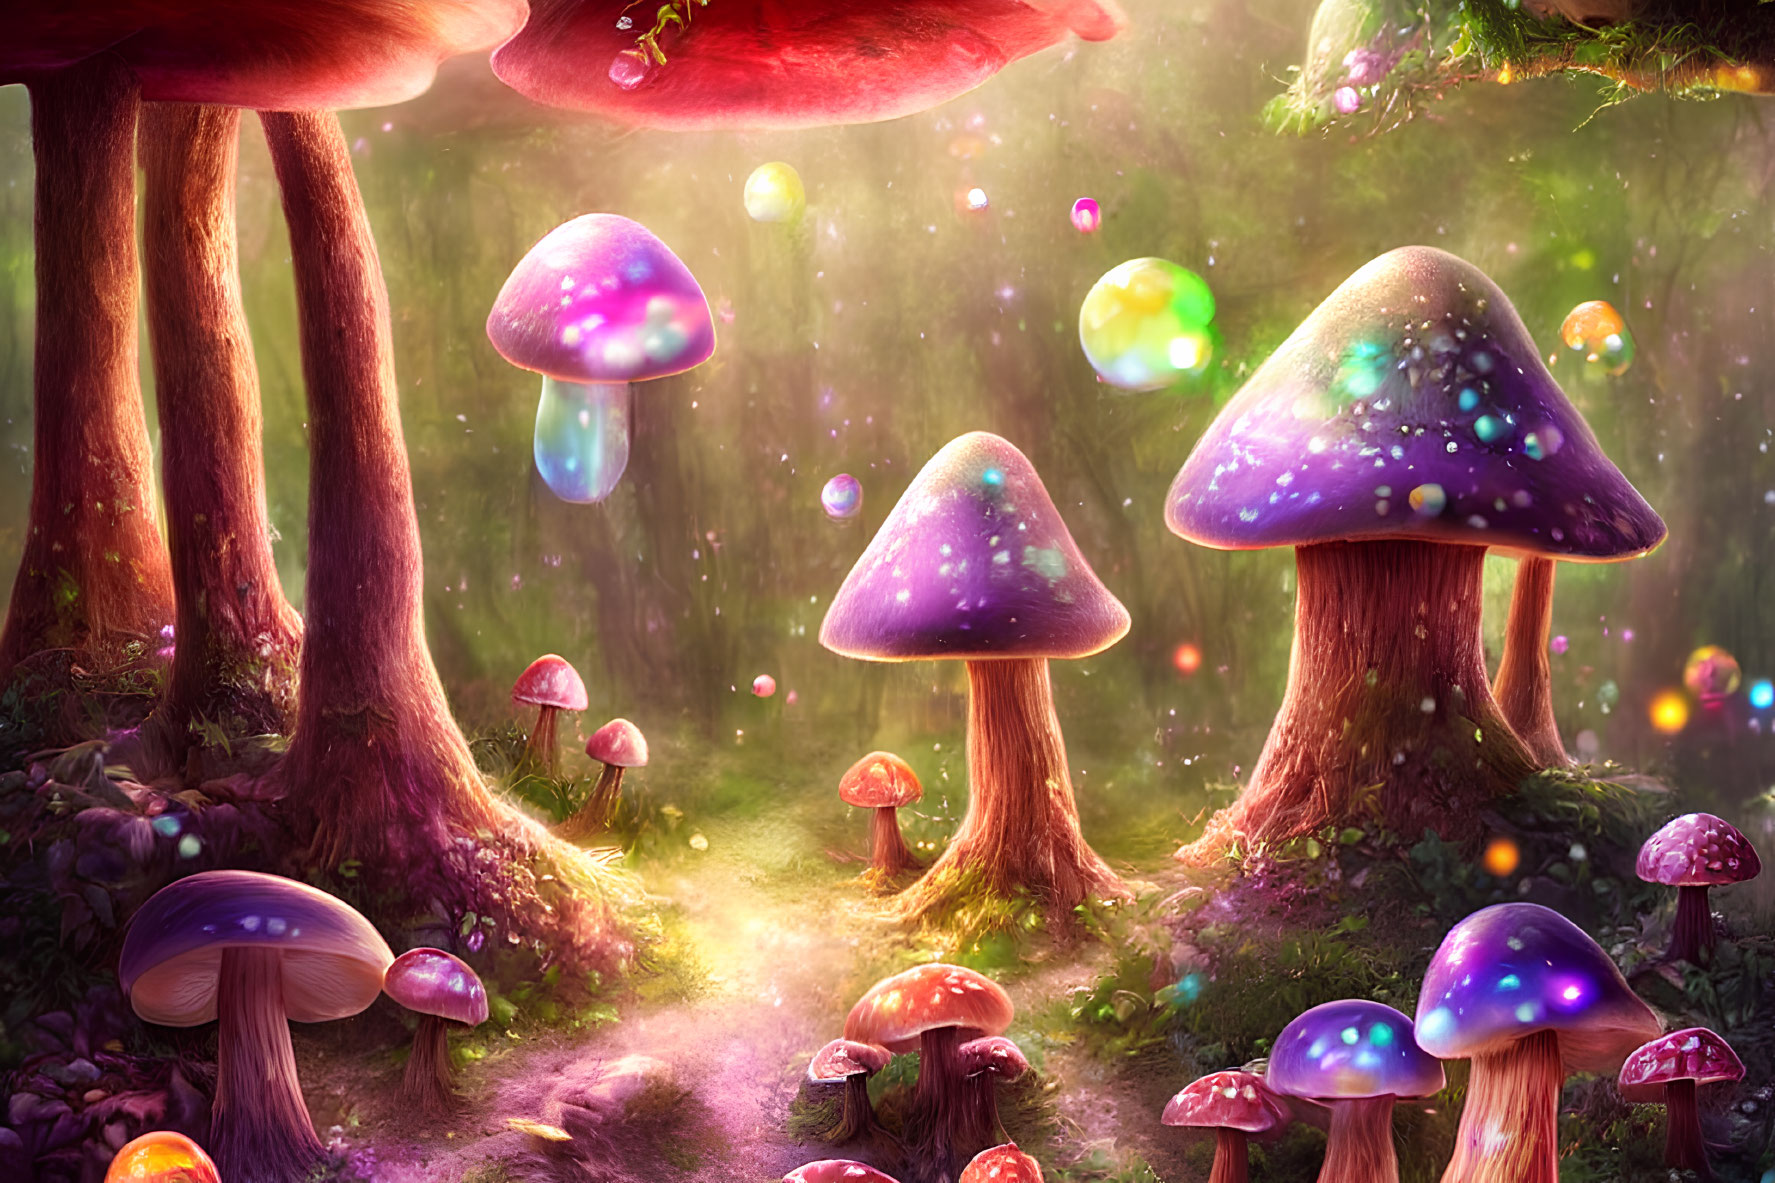 Vibrant oversized mushrooms in whimsical forest scene